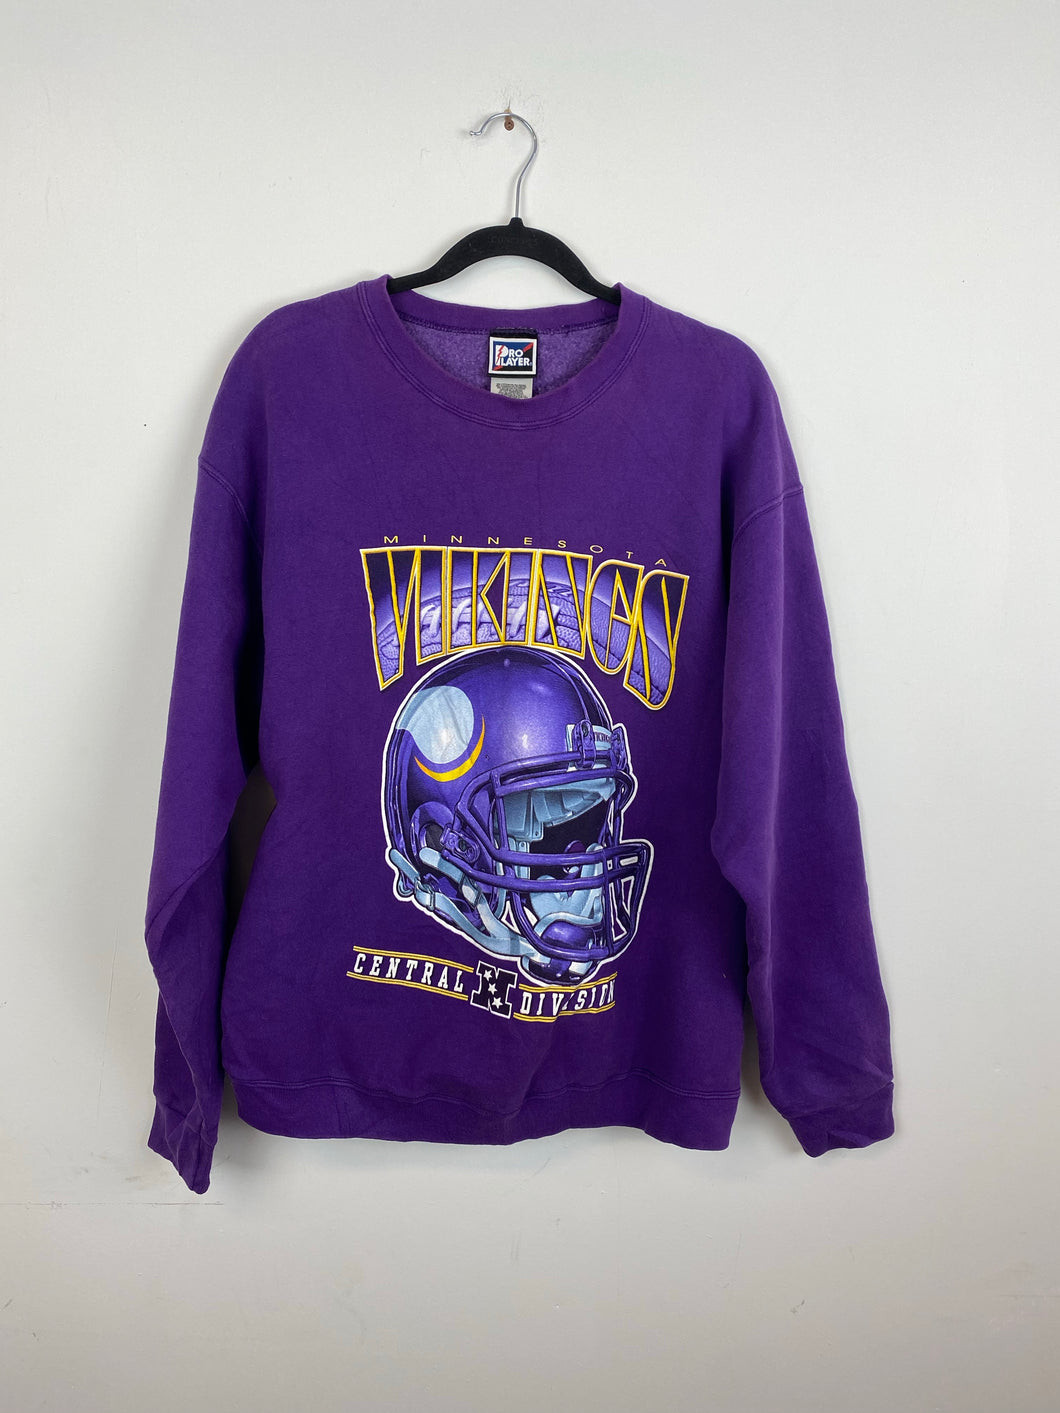 90s Minnesota Vikings crewneck